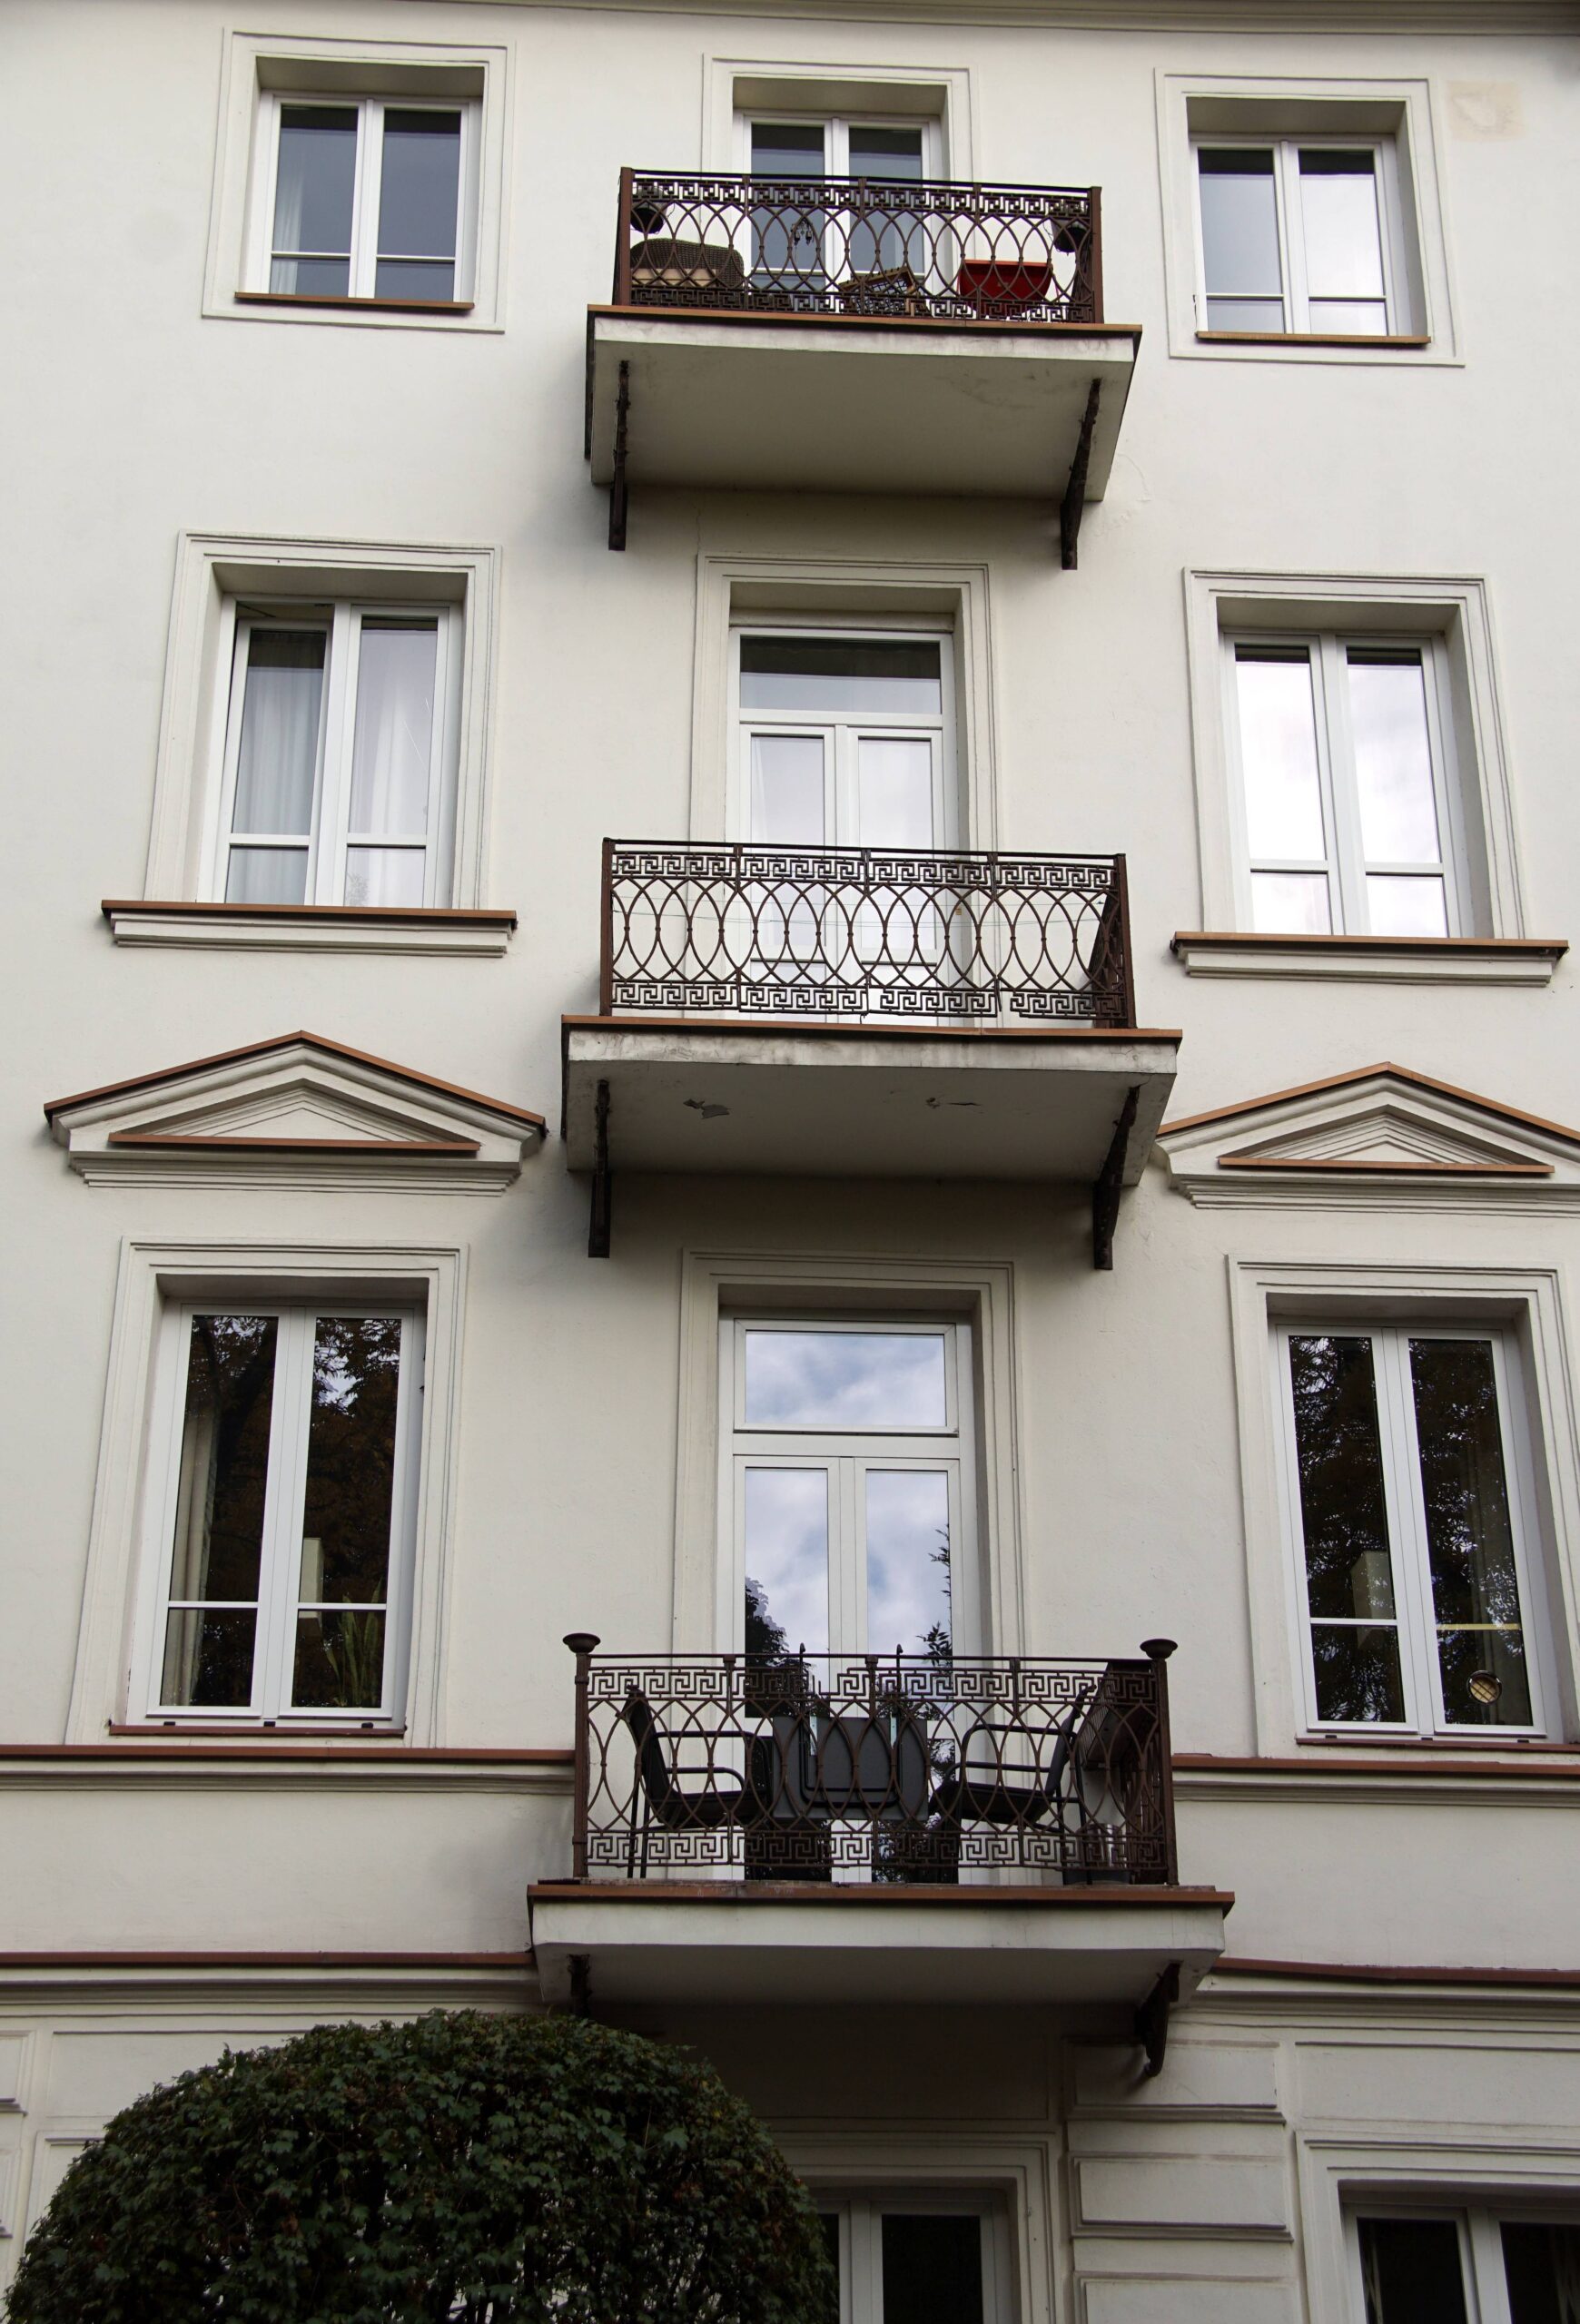 Balkony - trzy wschodnie osie od parteru po trzecie piętro. Widok od ulicy. Fot. Iwona Otrębska 2022 r., źródło: AOD III.